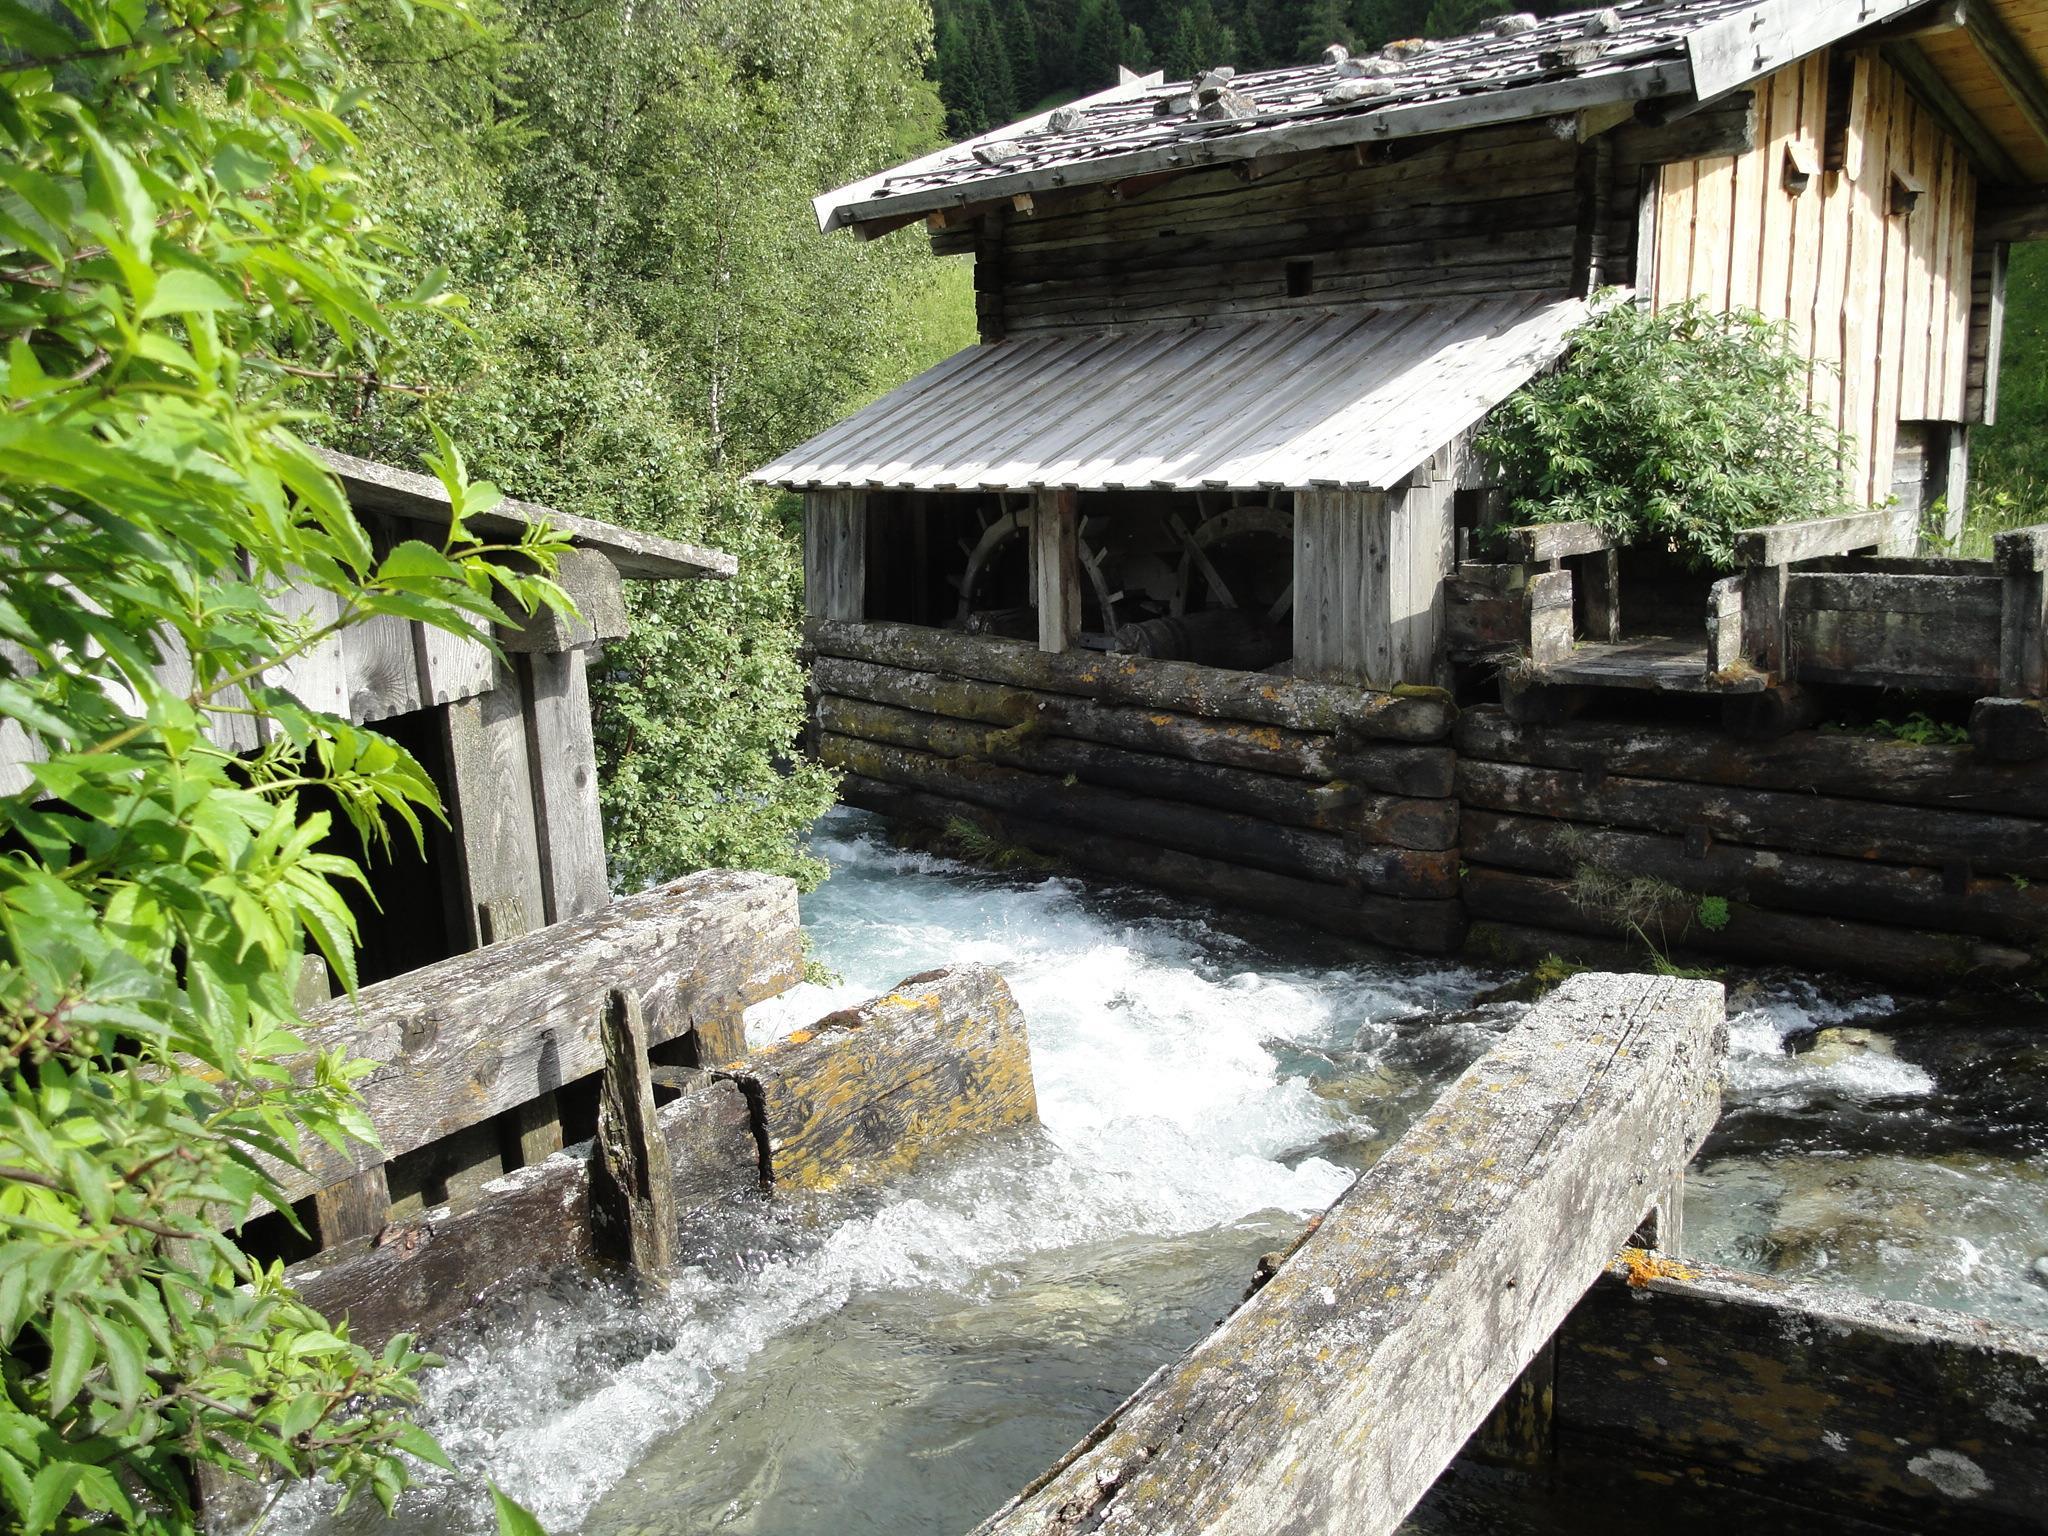 Mill presentation at Obernberg